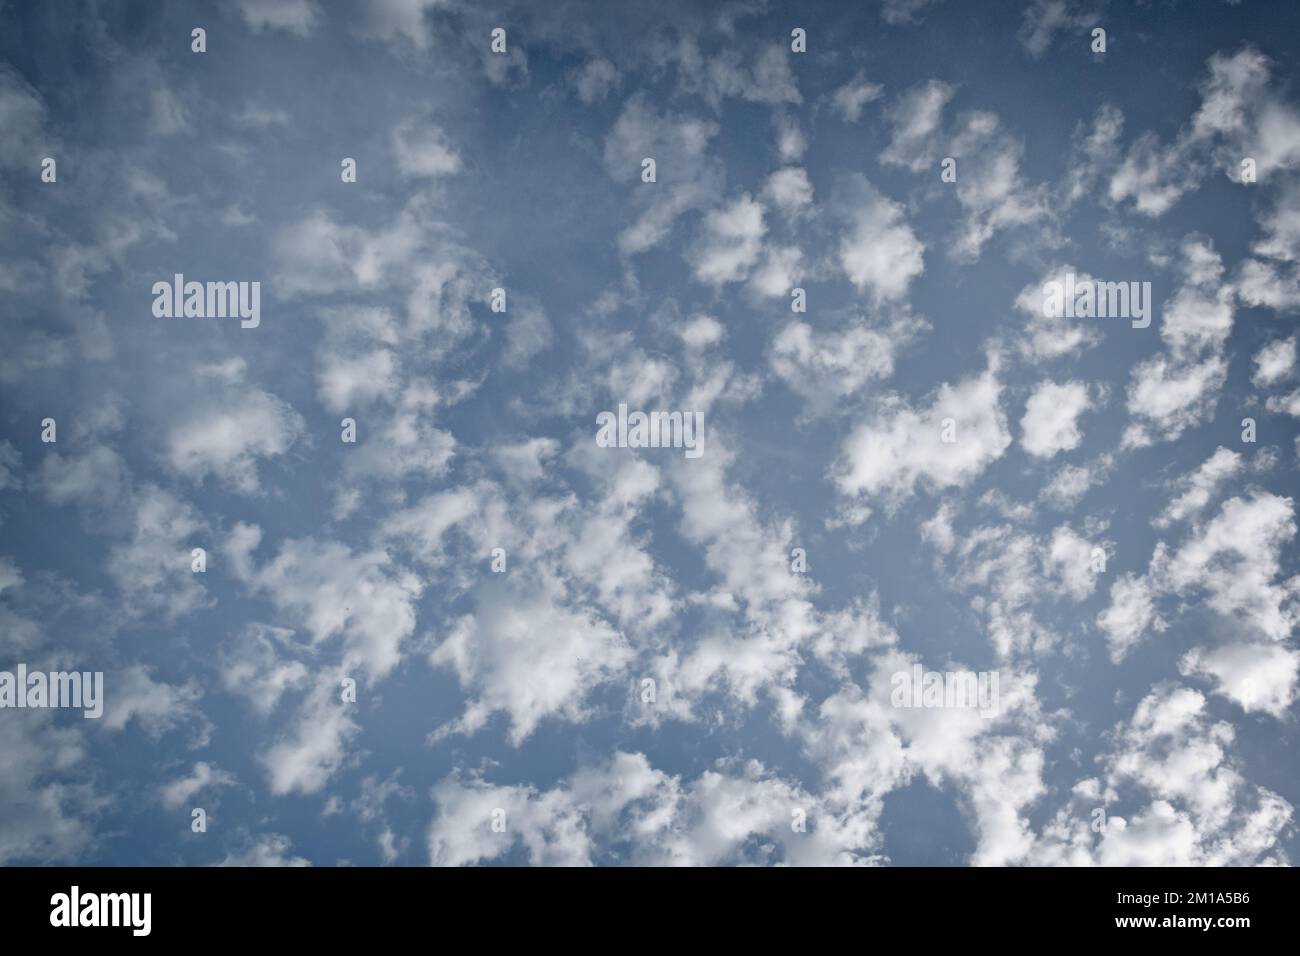 Nuages d'altocumulus blancs, avec survol latéral, contre un ciel bleu ; orientation paysage. Banque D'Images